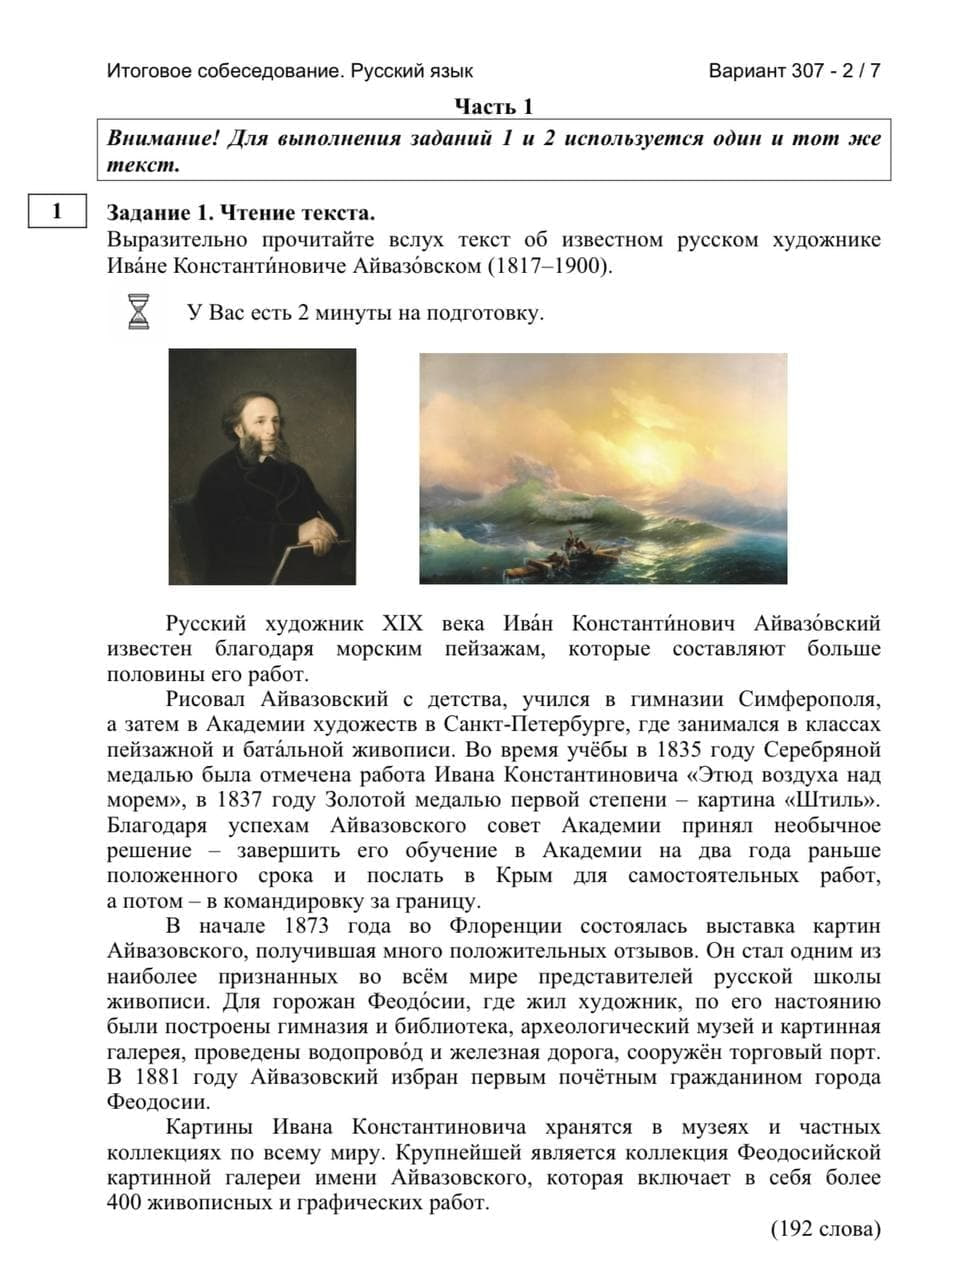 устное собеседование по русскому языку описание фотографии